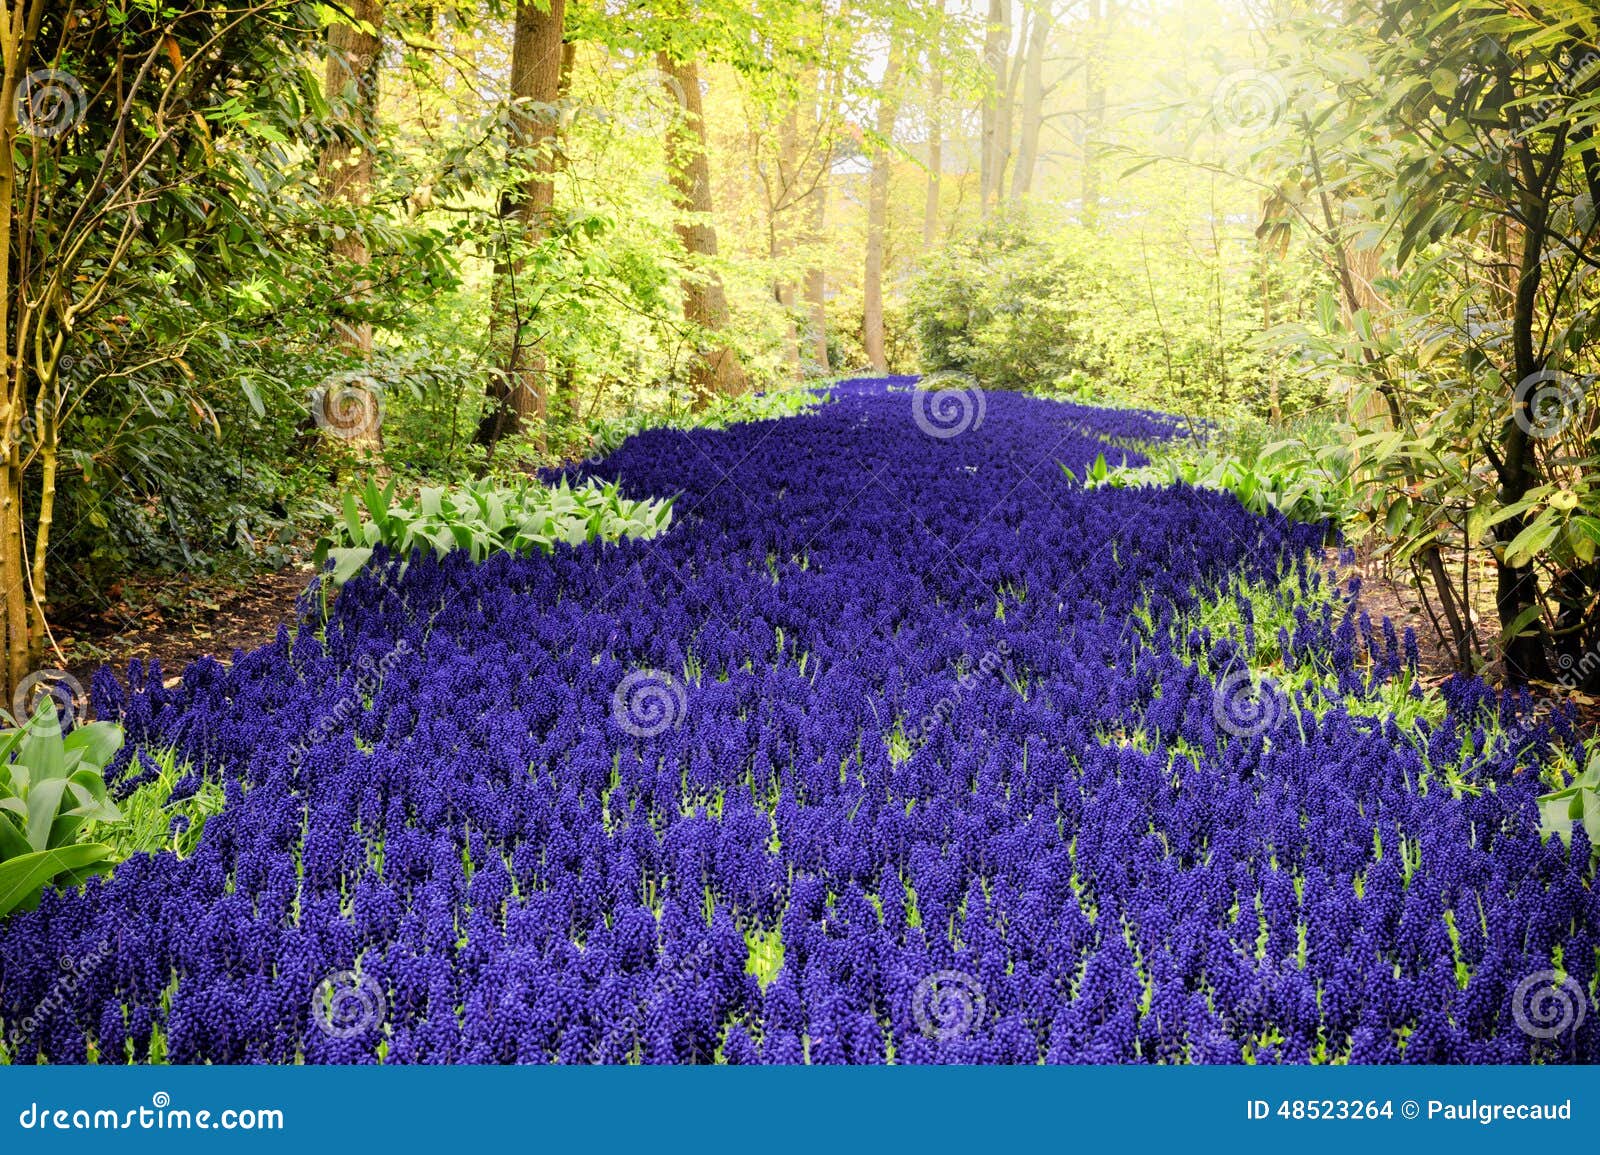 beautiful purple muscari